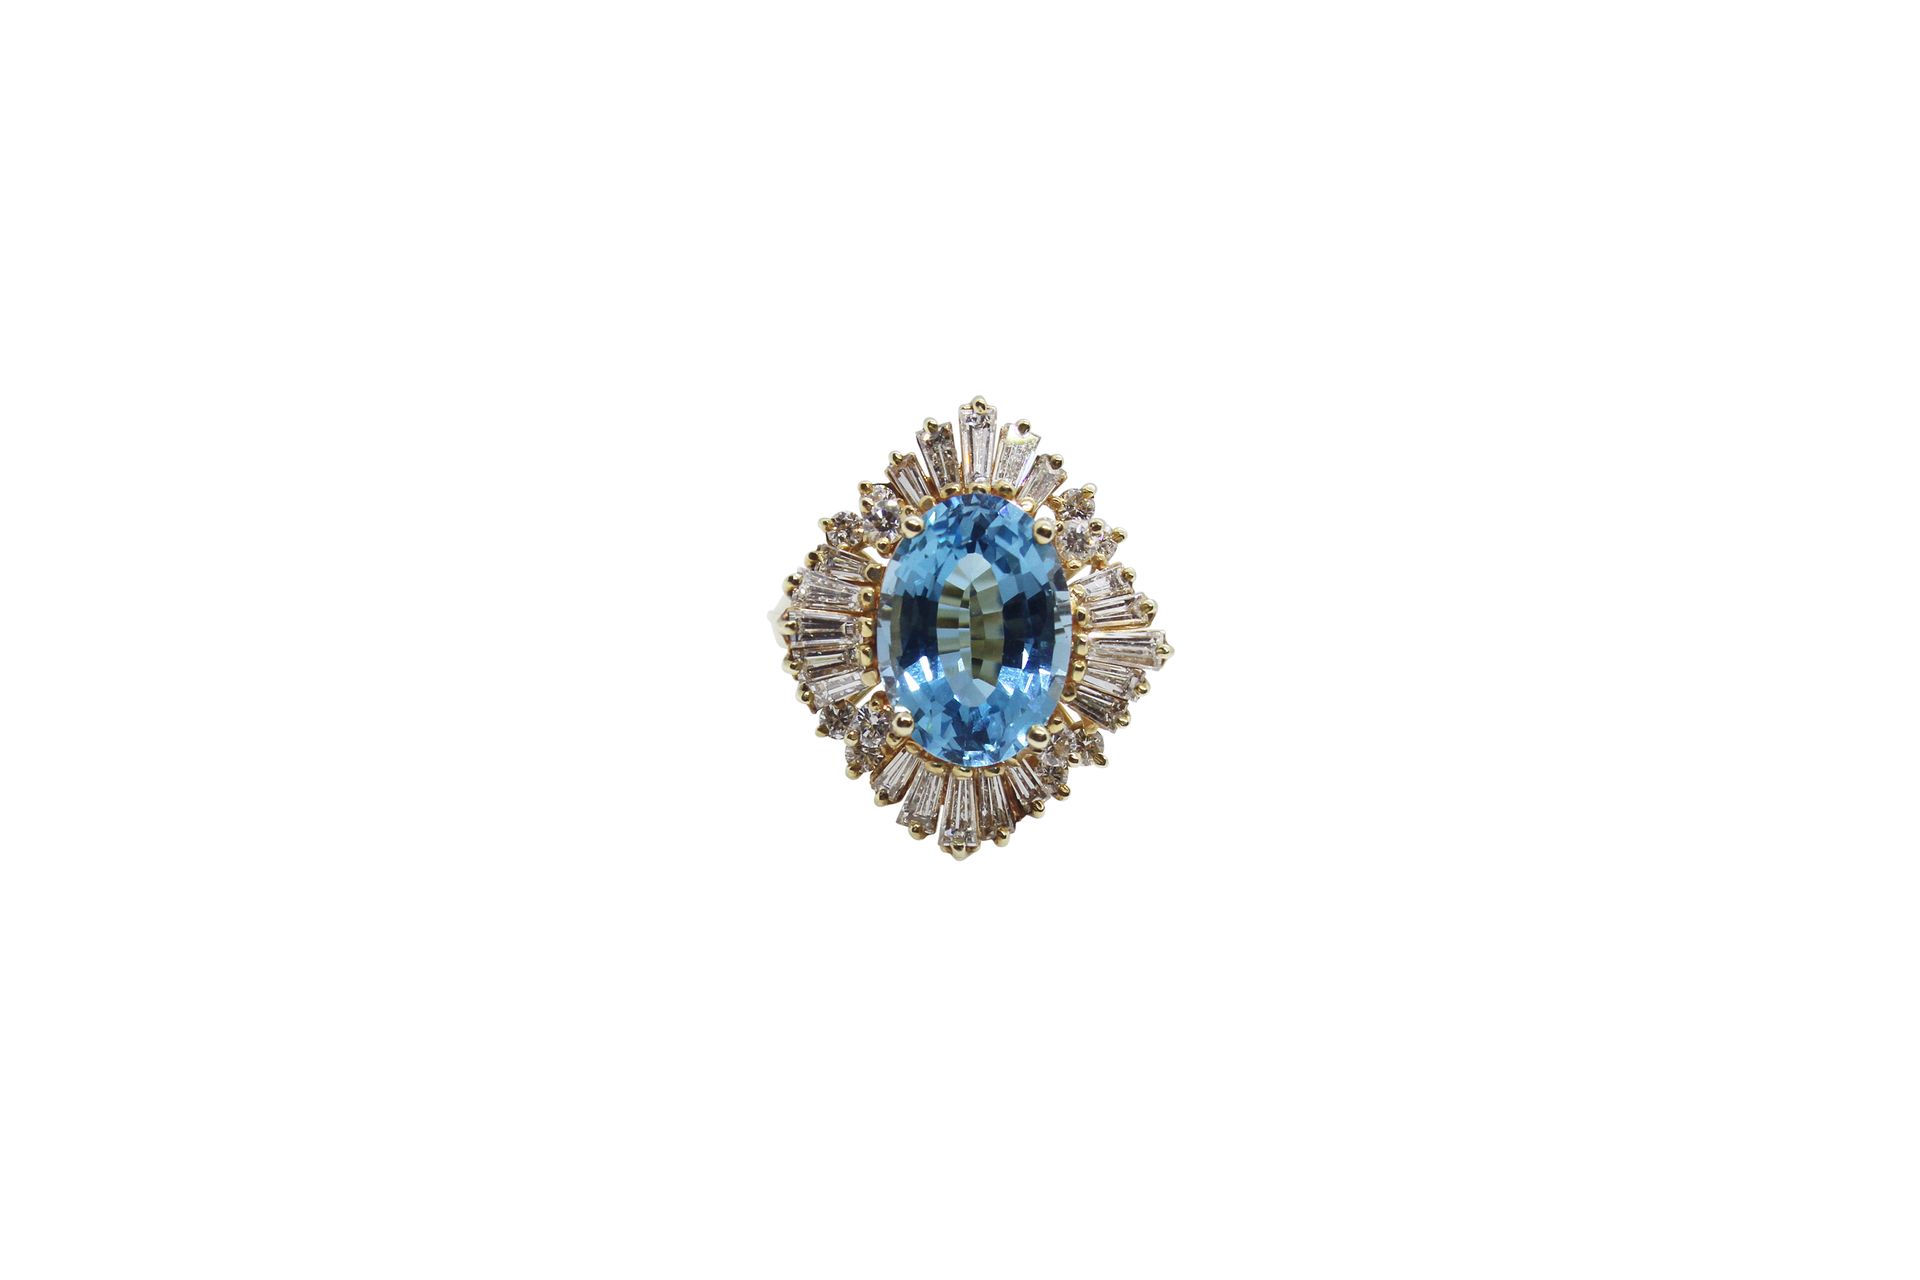 18k gold ring set with blue topaz and diamonds 18K金戒指，镶嵌蓝色托帕石和钻石。毛重约8.9克，尺寸：53